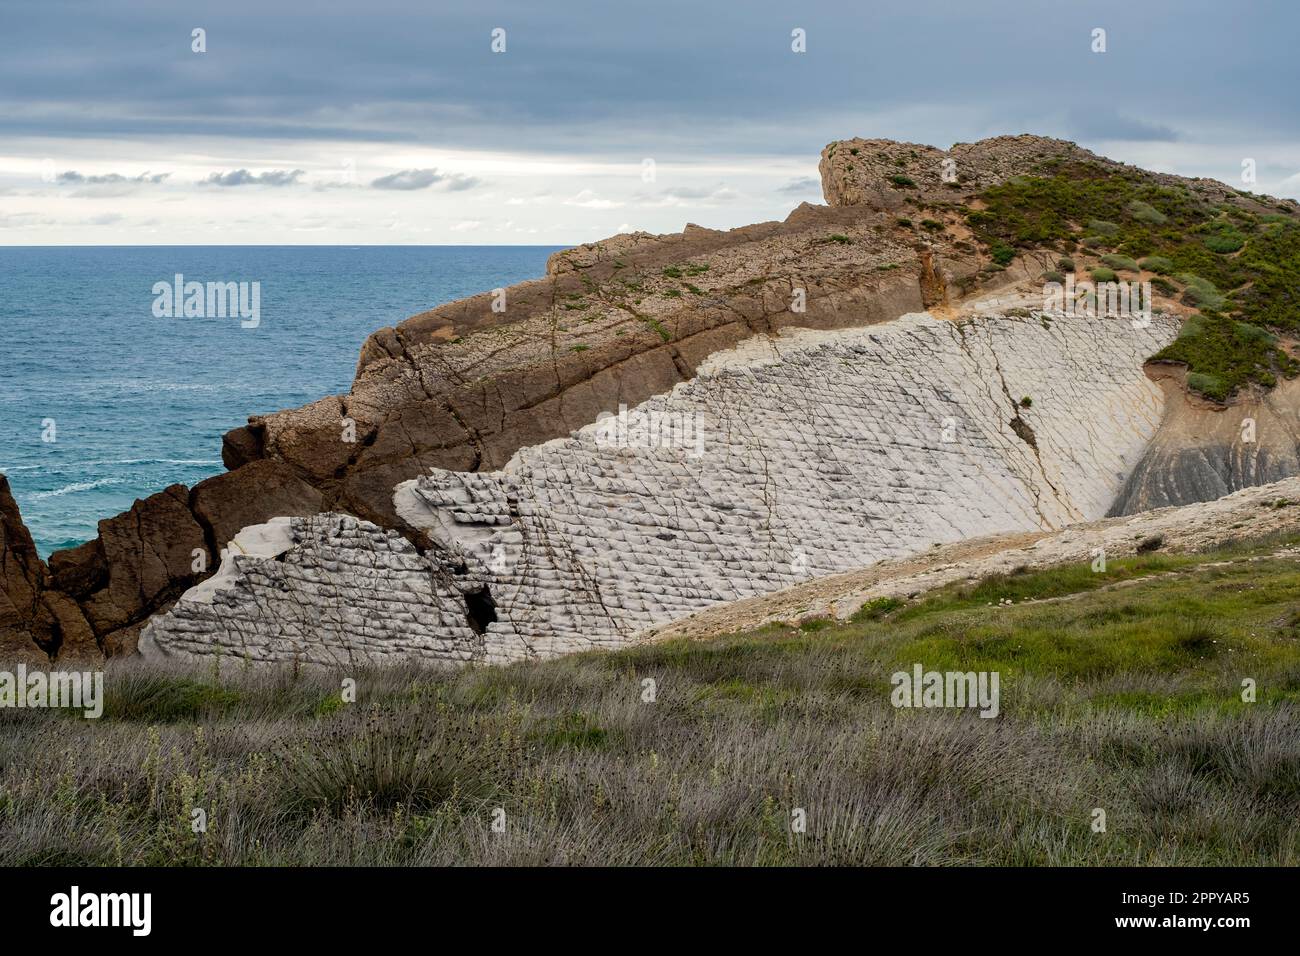 Coastal erosion of rocks and landforms displaying the lithological ...